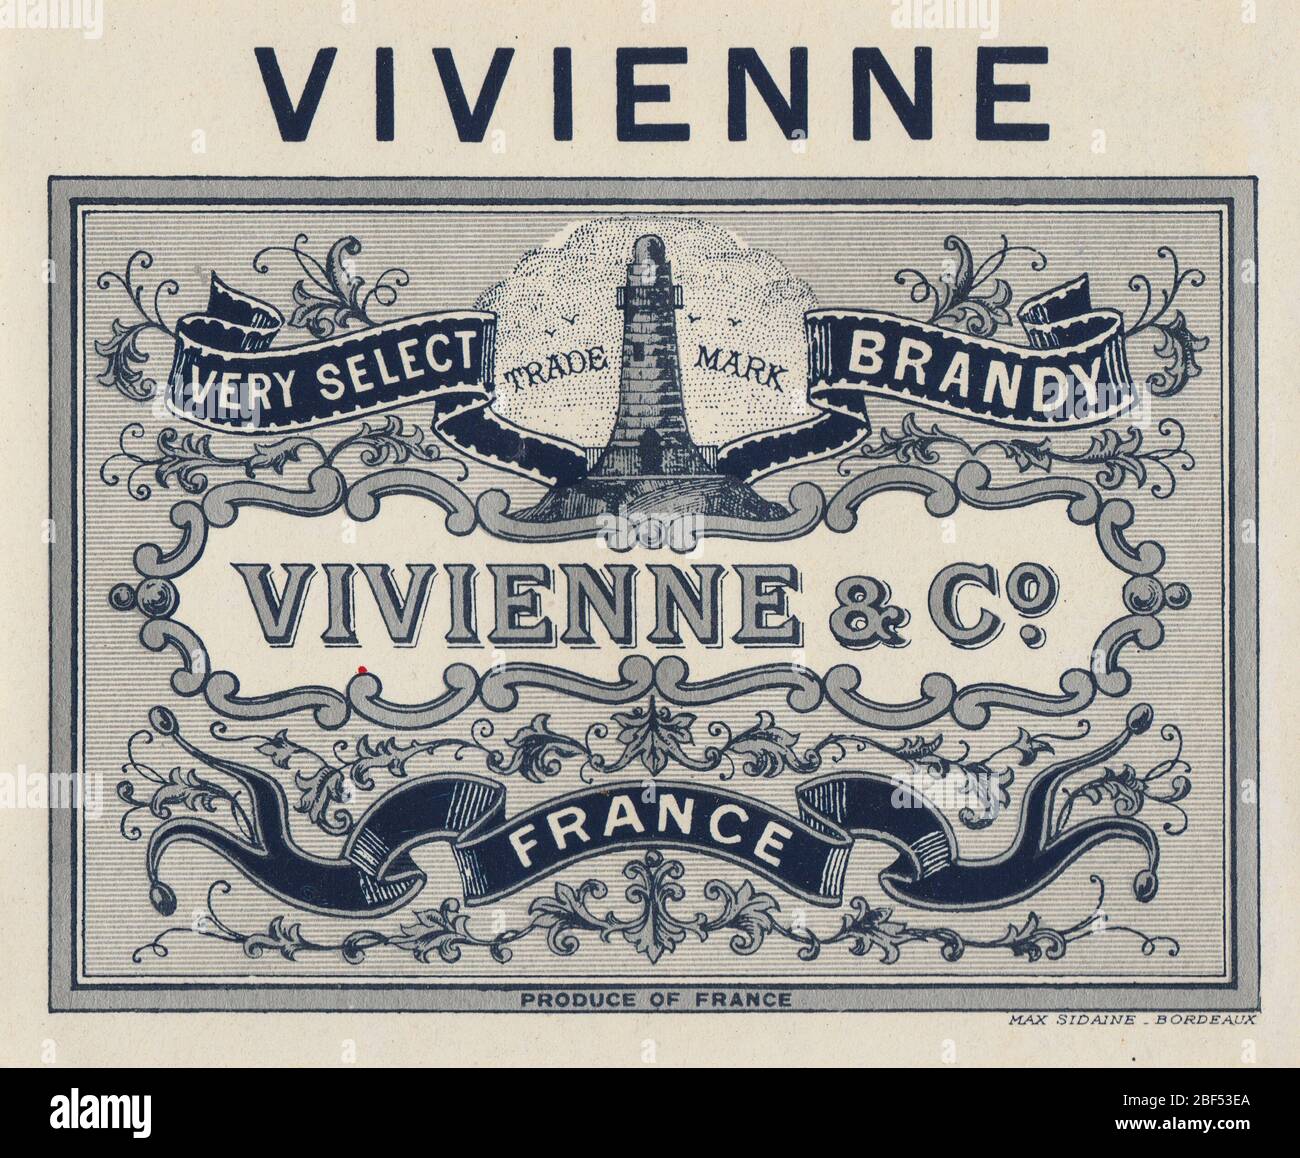 Label vintage non utilisé et rare d’une liqueur de brandy à base de vin française, avec le nom de Vivienne, de ‘Vivienne & Co’ en France Banque D'Images